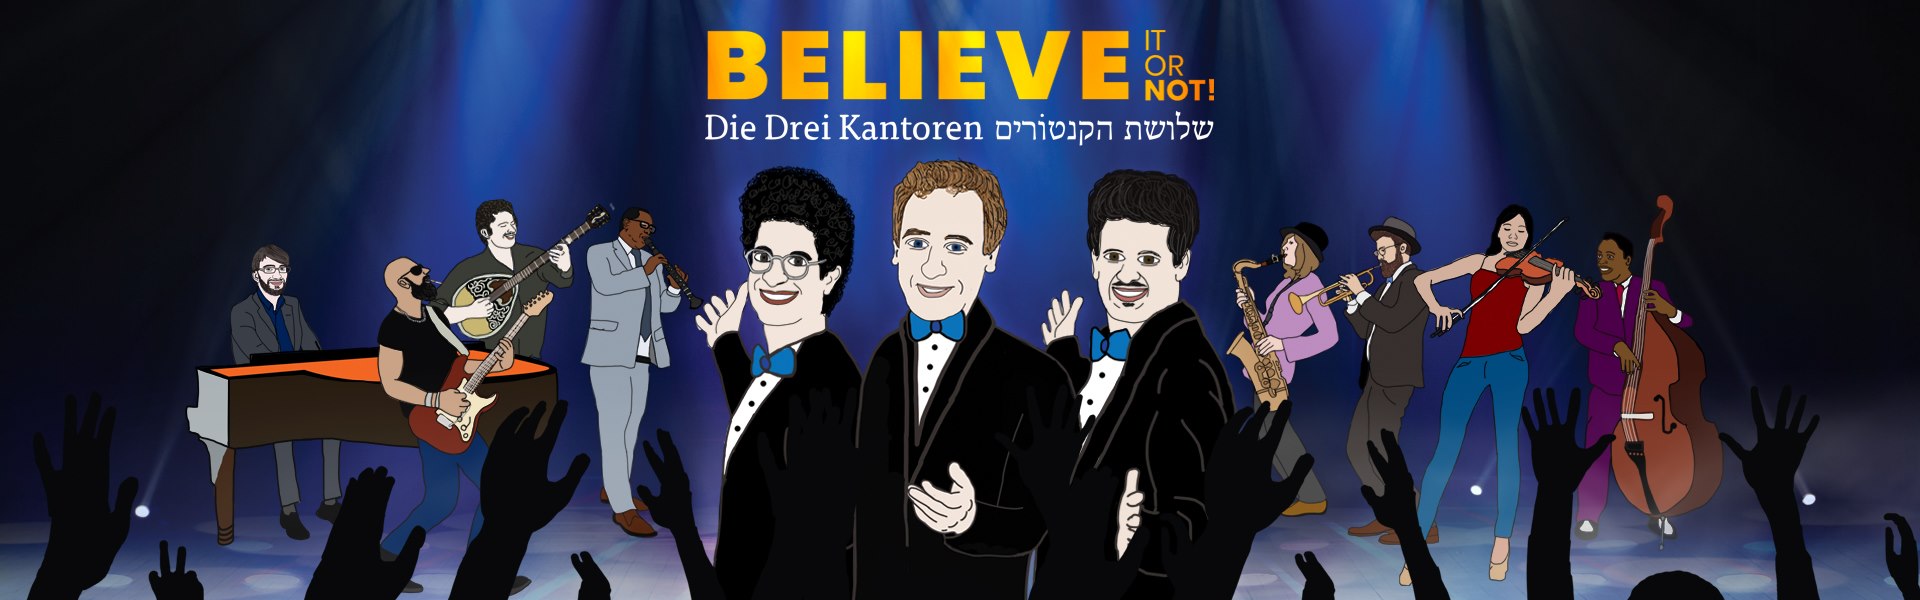 Konzert: Die drei Kantoren, „Believe it or not“ – Jüdische Lieder über Glauben und Zweifel